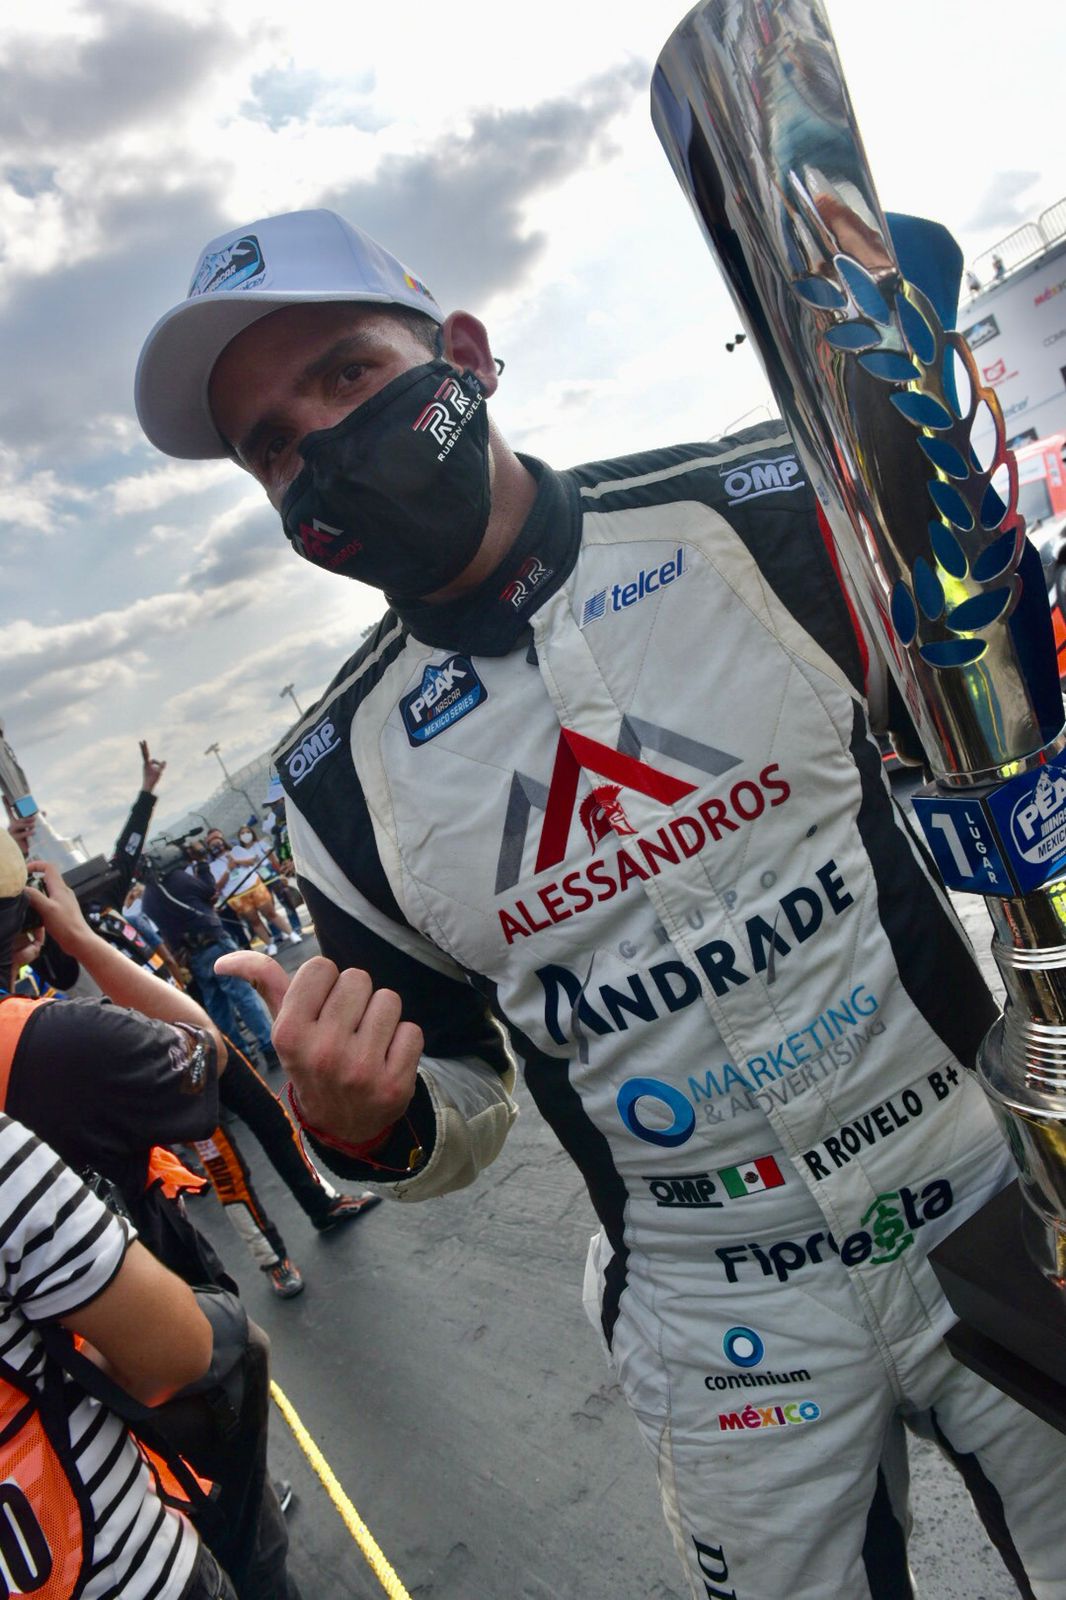 Alessandros Racing, Rovelo y León con dominio total en Monterrey